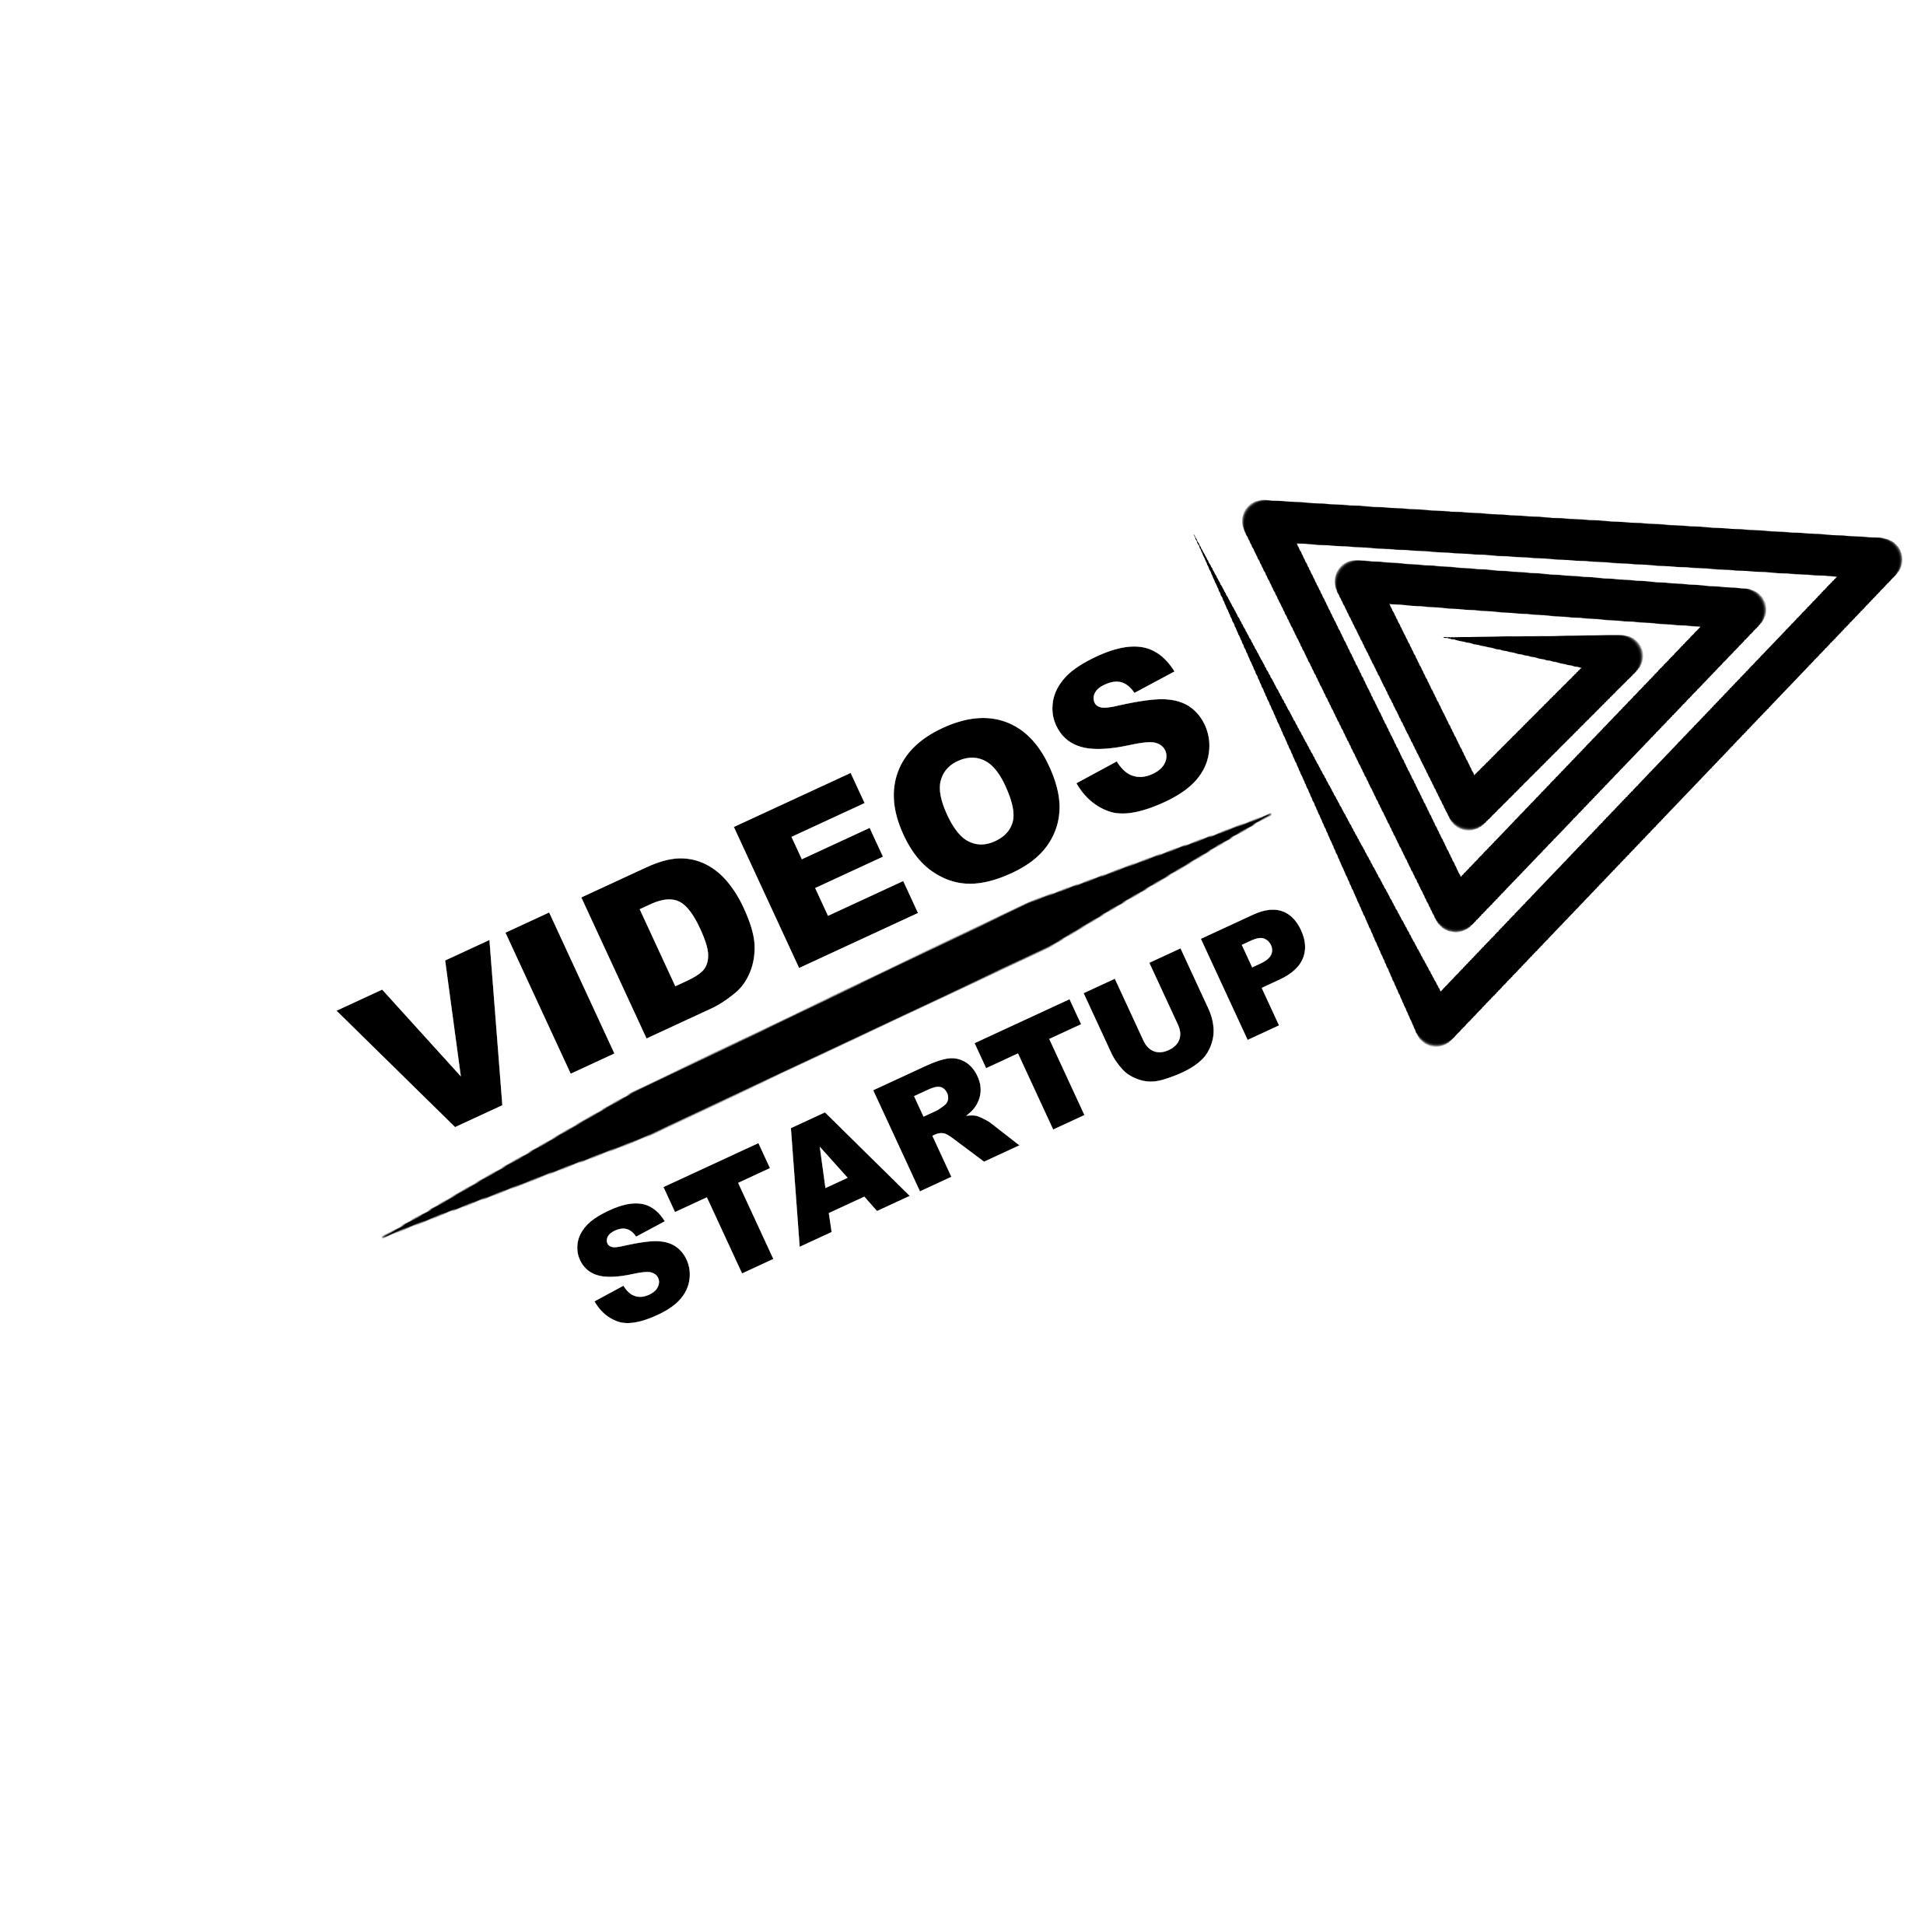 Videos StartUp